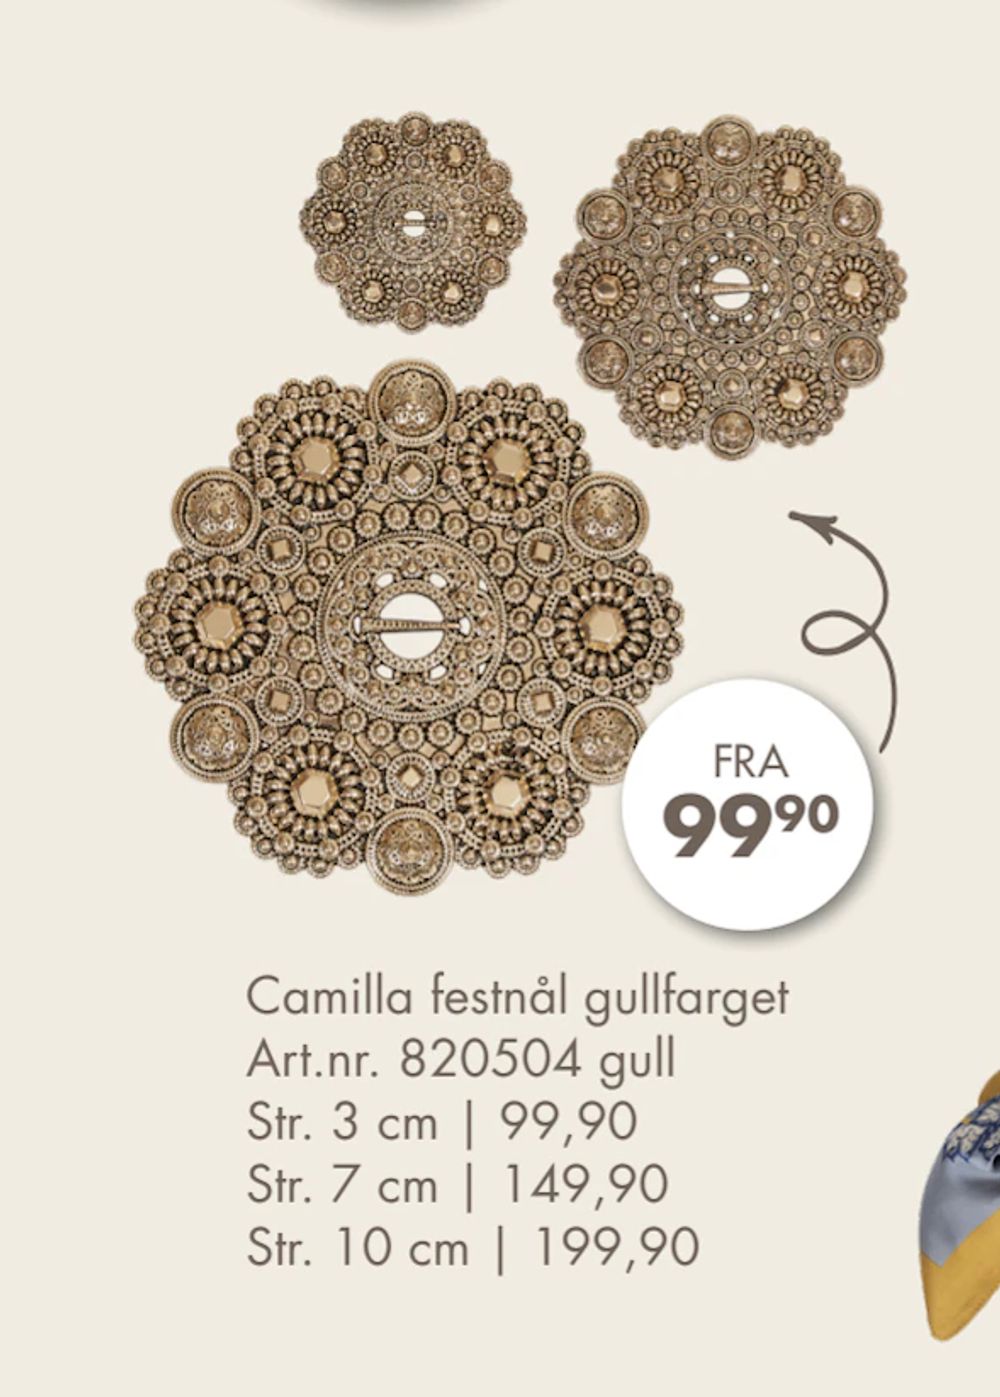 Tilbud på Camilla festnål gullfarget fra Spar Kjøp til 99,90 kr